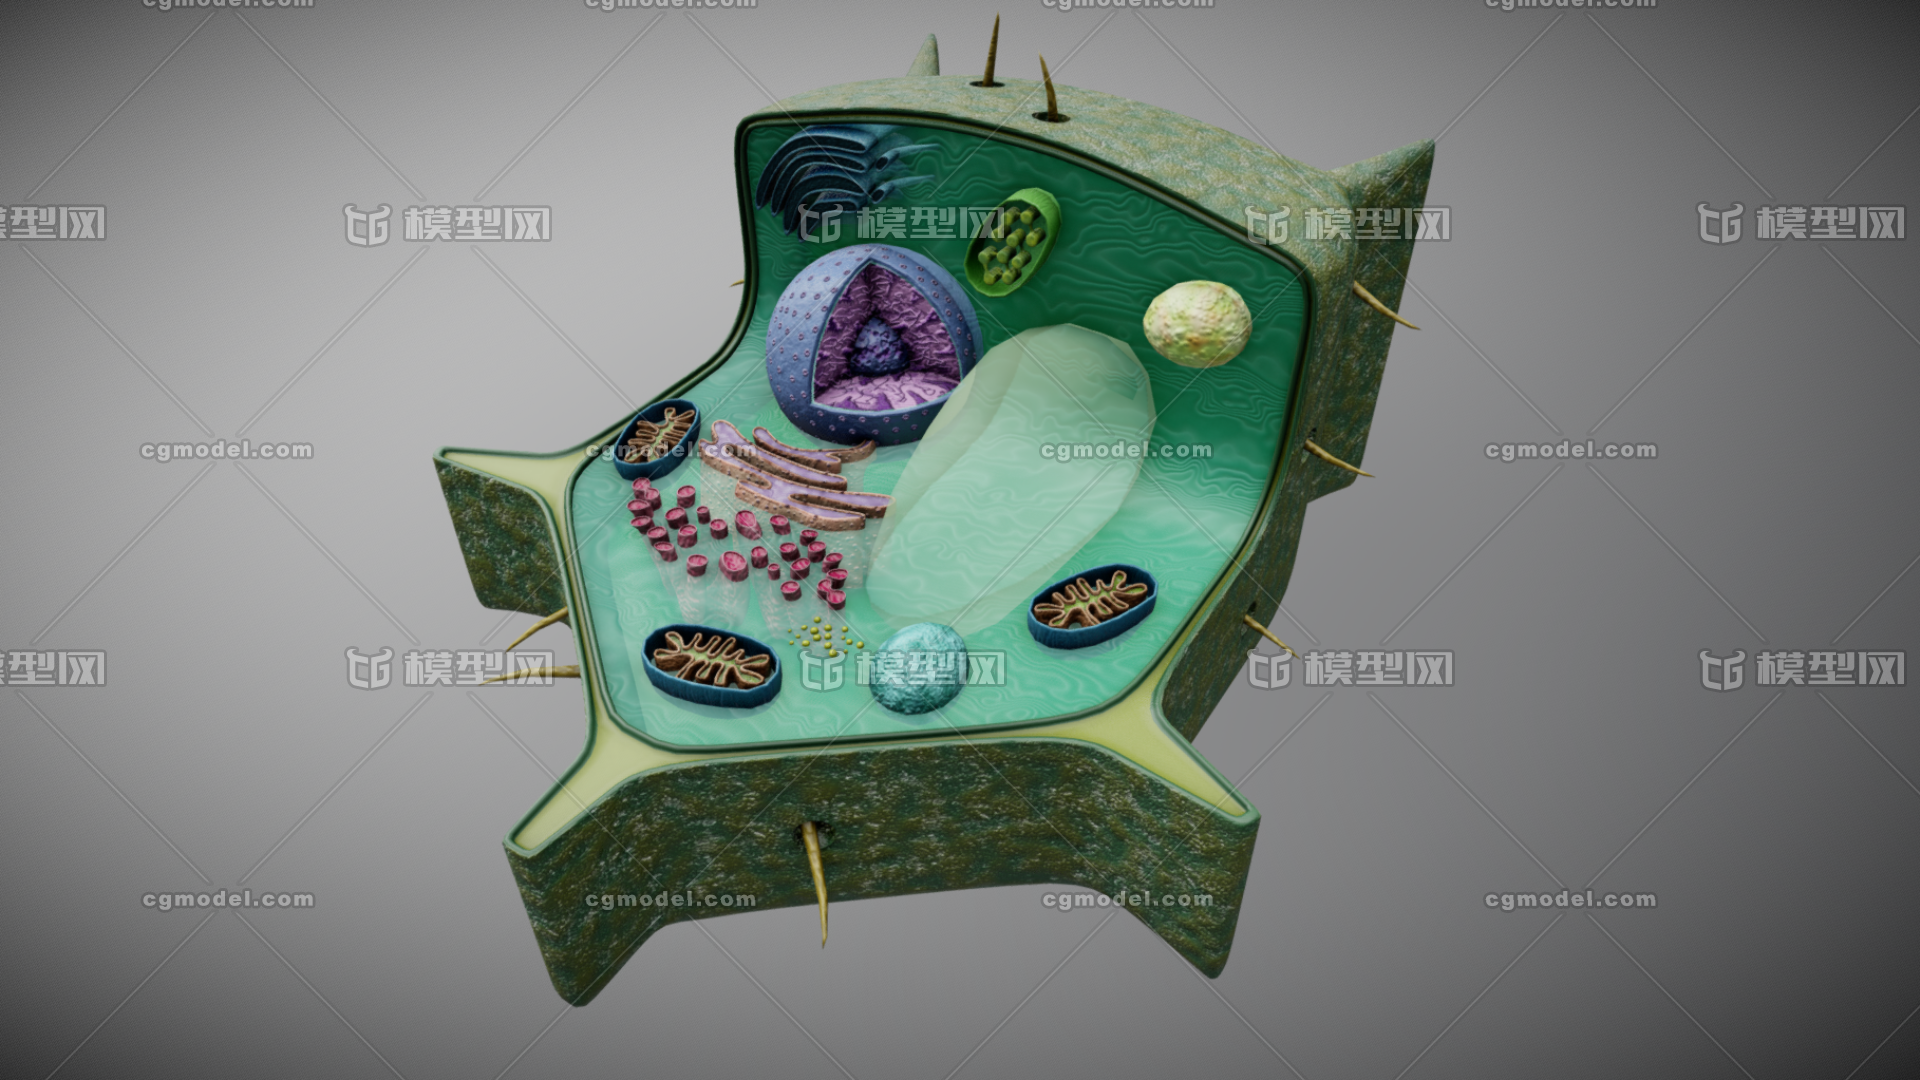 植物细胞 写实植物细胞模型 植物细胞 剖面 细胞核 高尔基体 叶绿体